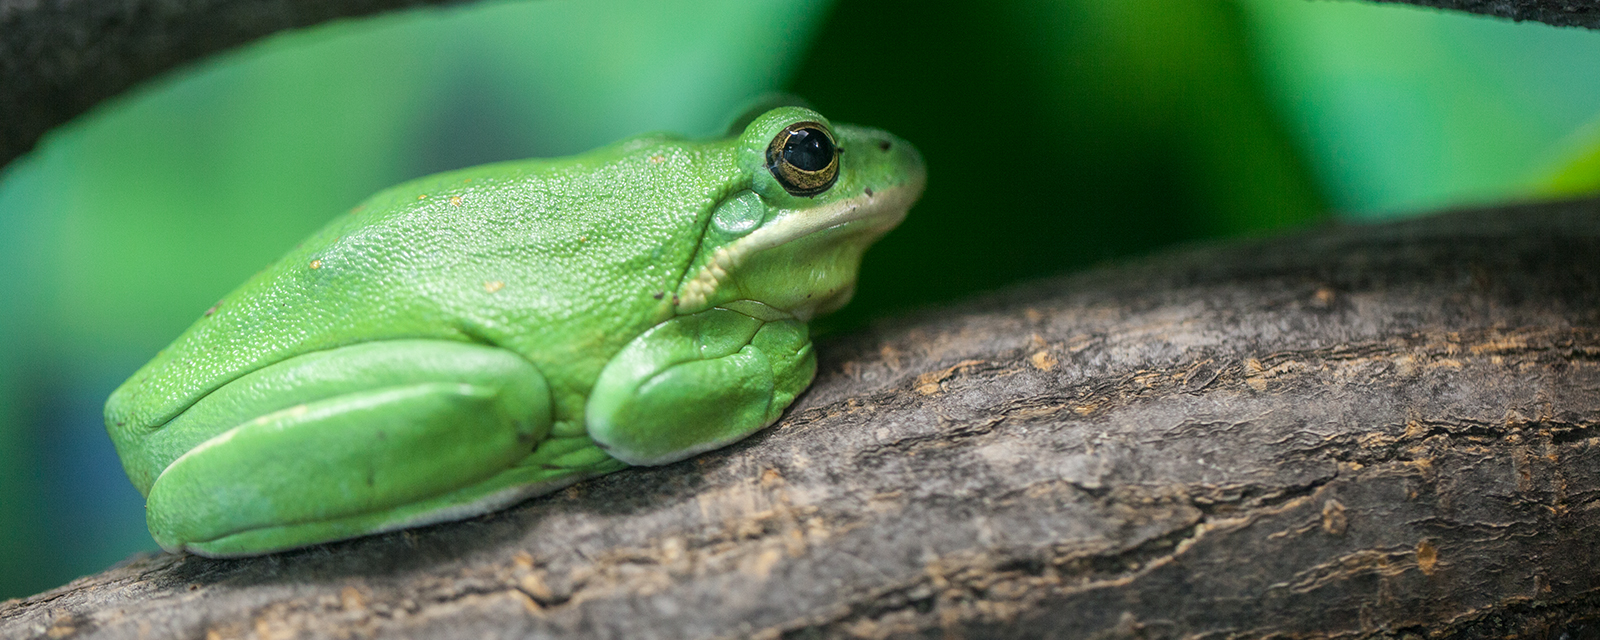 Green tree frog in exhibit